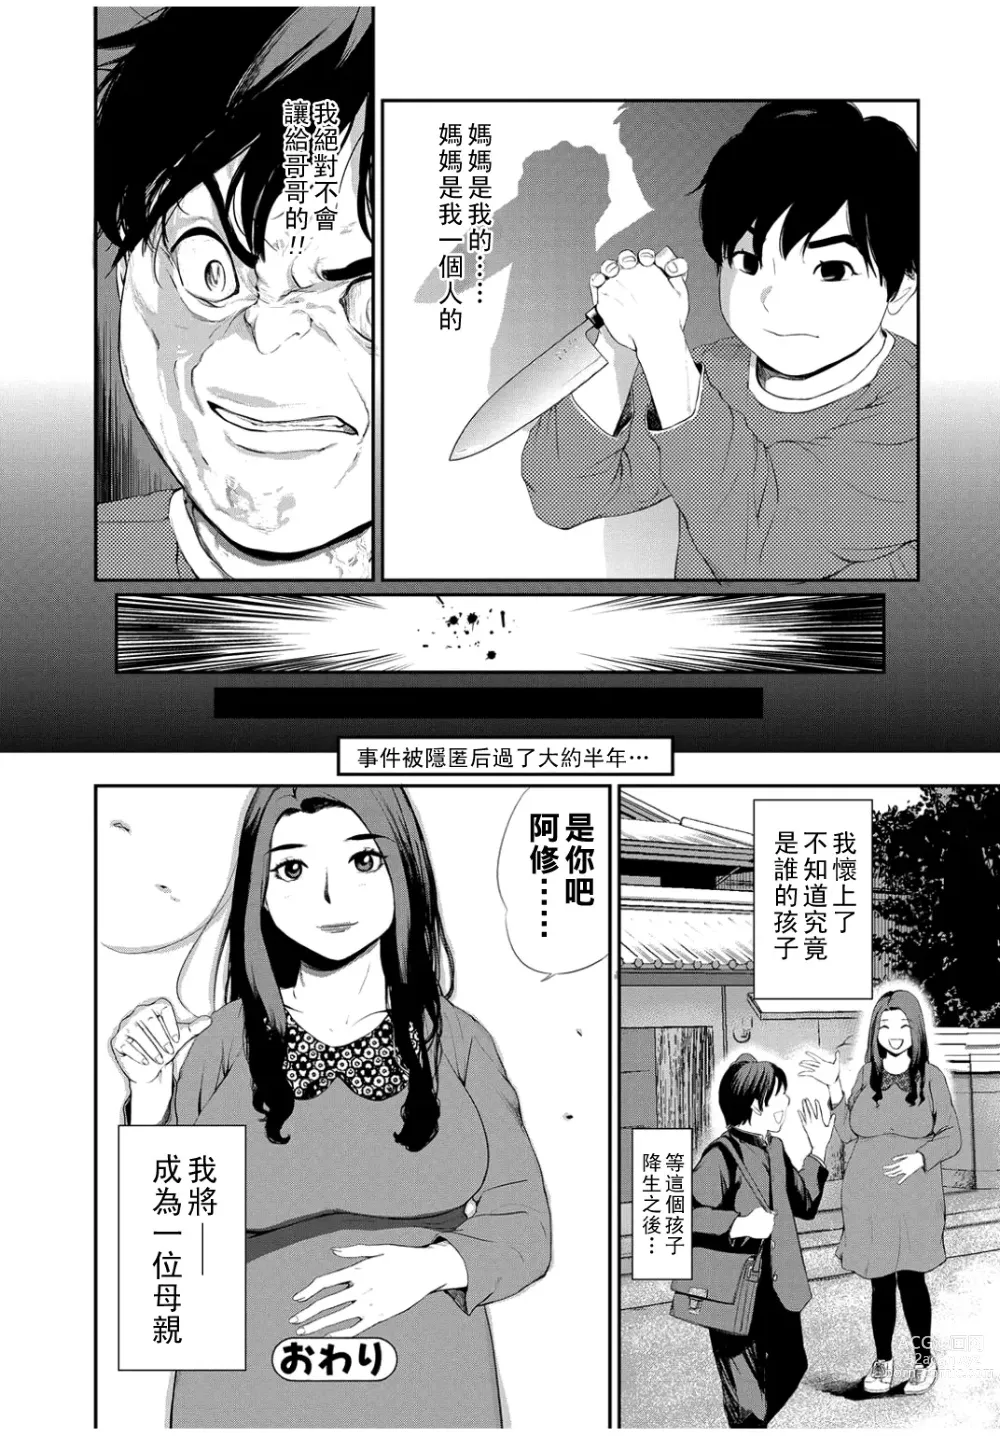 Page 24 of manga Gibo Change